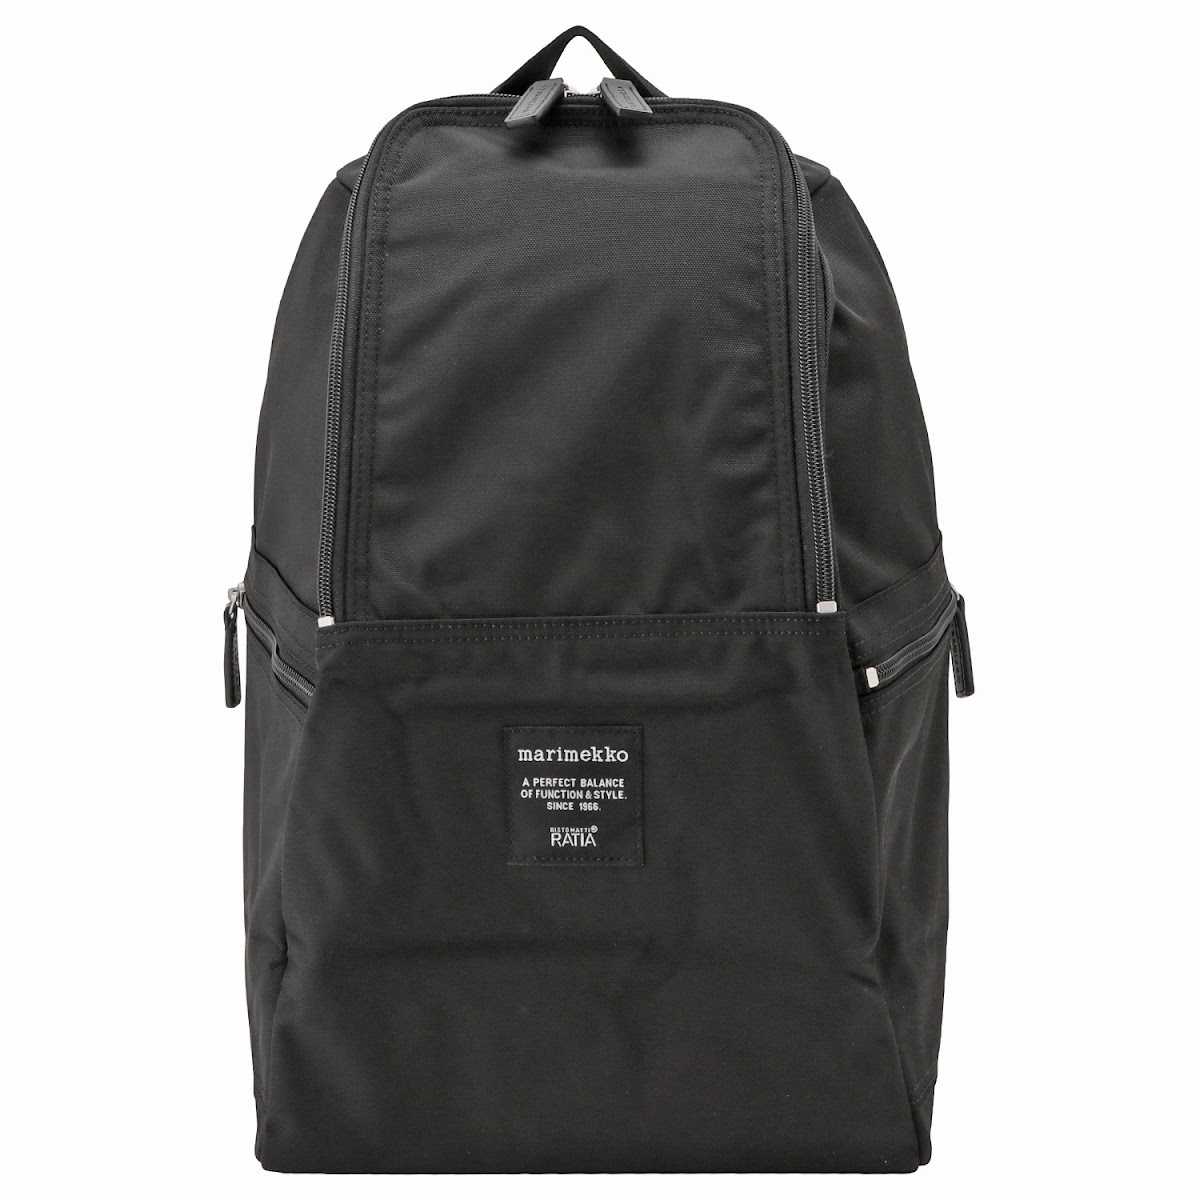 マリメッコ marimekko 039972 999 メトロ バックパック リュックサック ブラック レディース メンズ ユニセックス Metro backpack